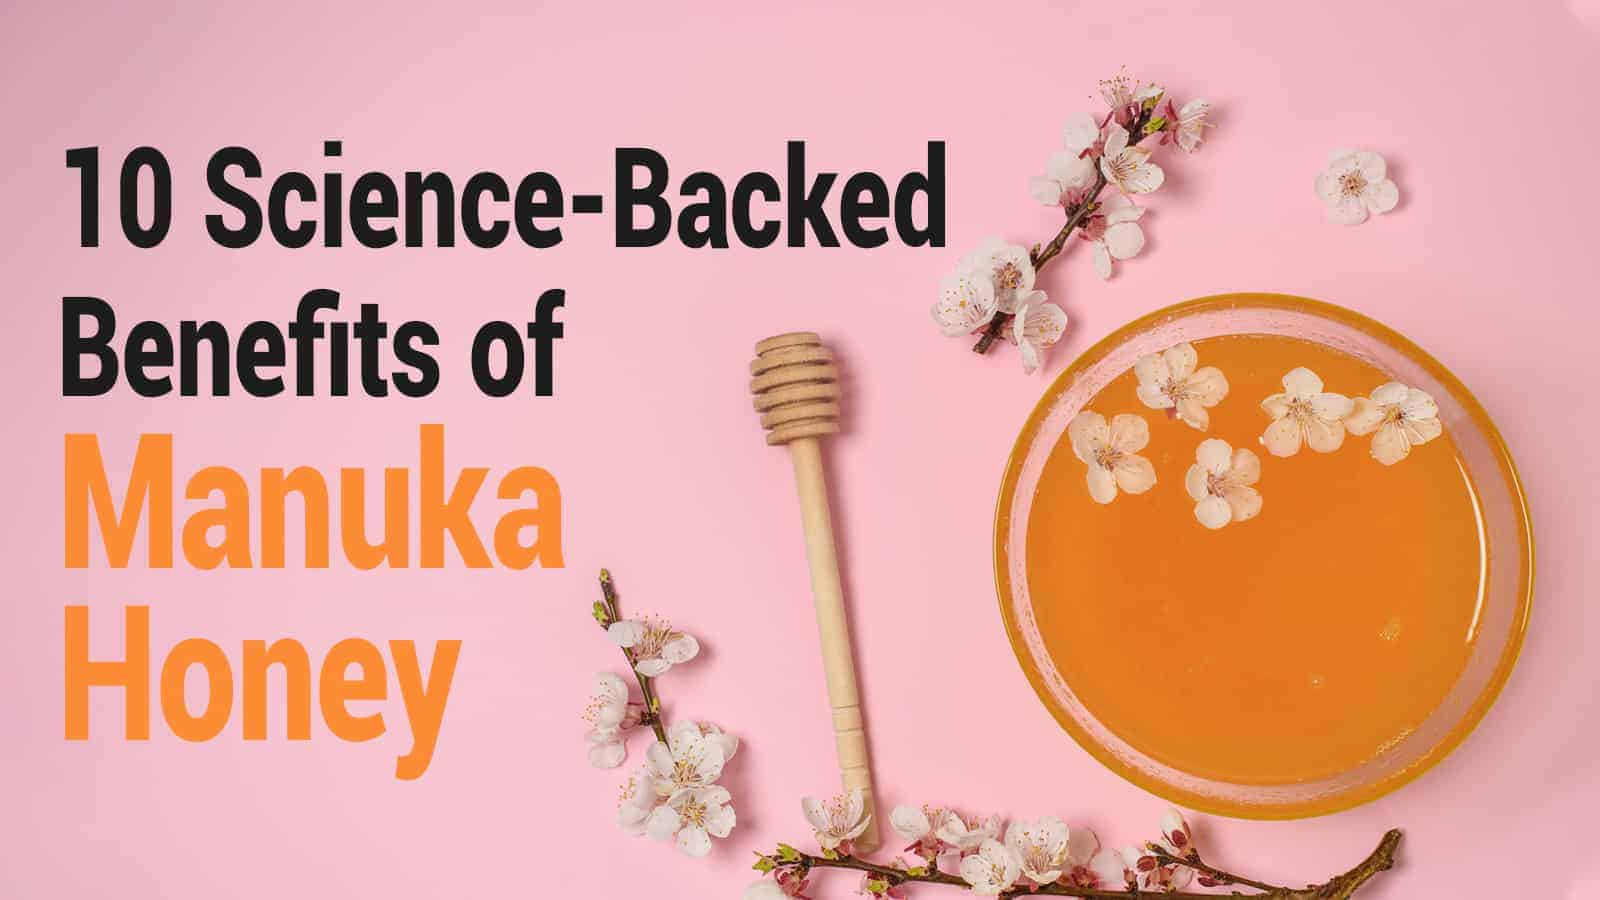 10 Science-Backed Benefits of Manuka Honey